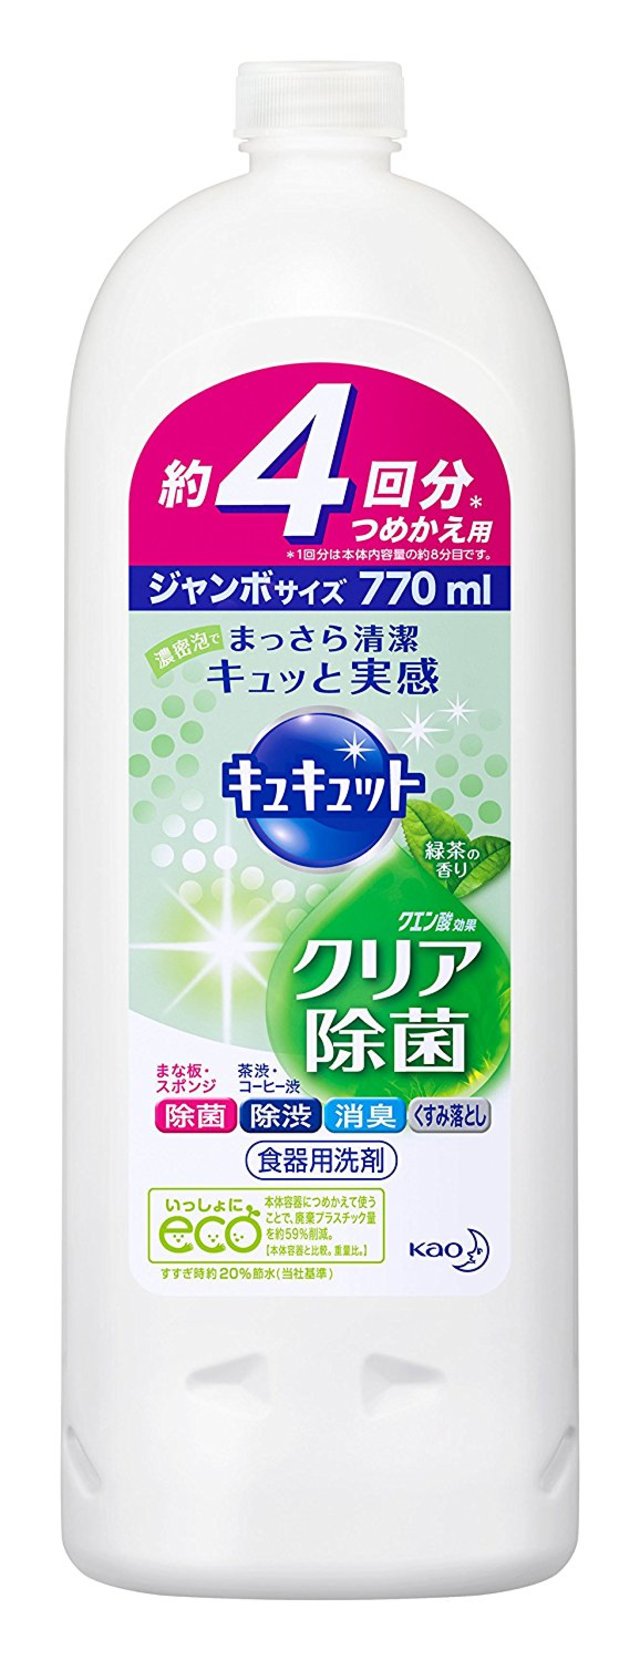 キュキュット 食器用洗剤 クリア除菌緑茶 つめかえ用 770ml